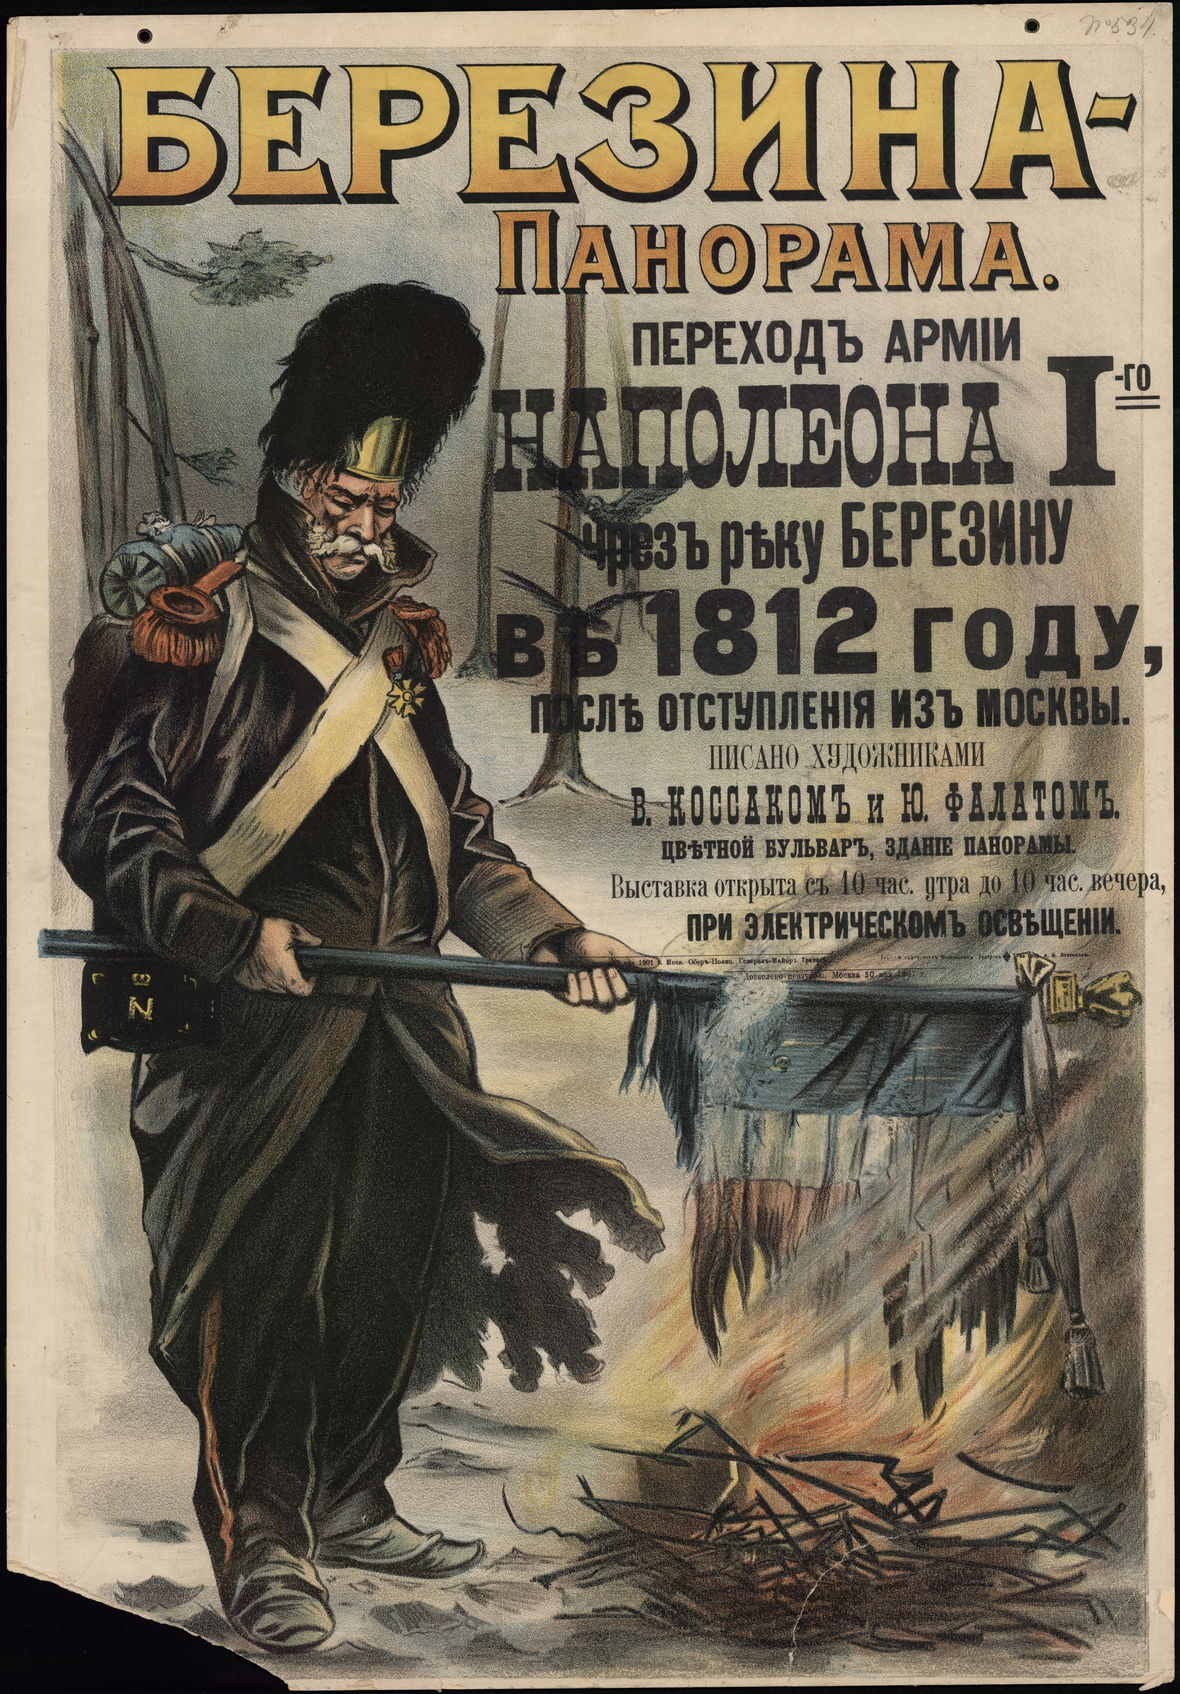 Ю. Фалат Афиша к выставке «Березина-Панорама» в Москве, 1901